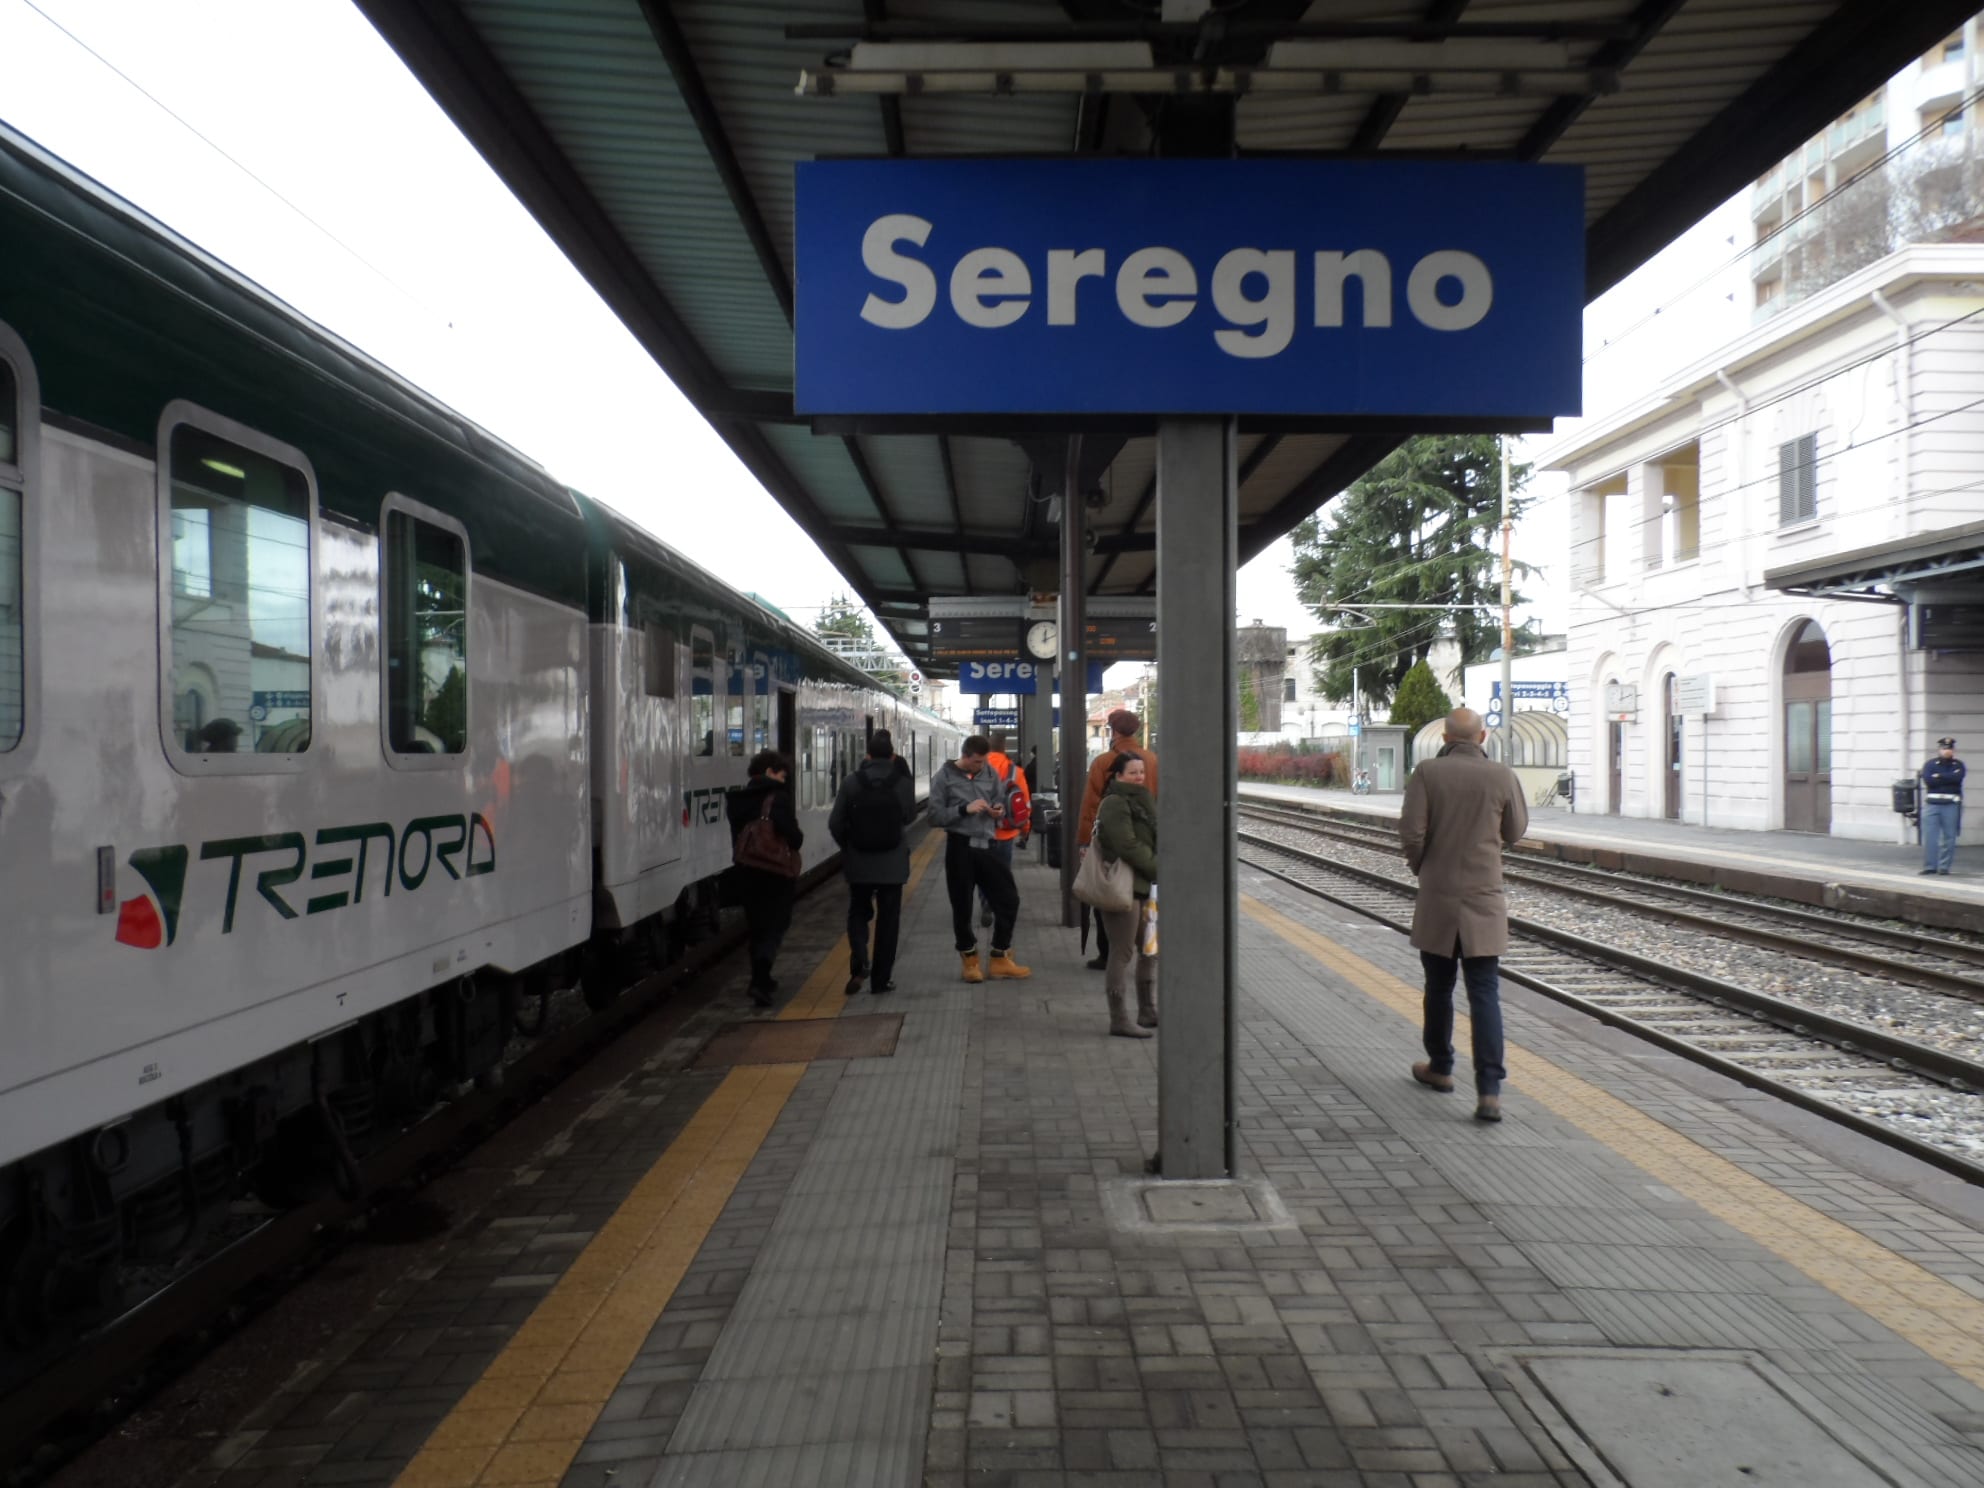 Ferrovia Saronno-Seregno-Bergamo aeroporto: il progetto dovrà attendere